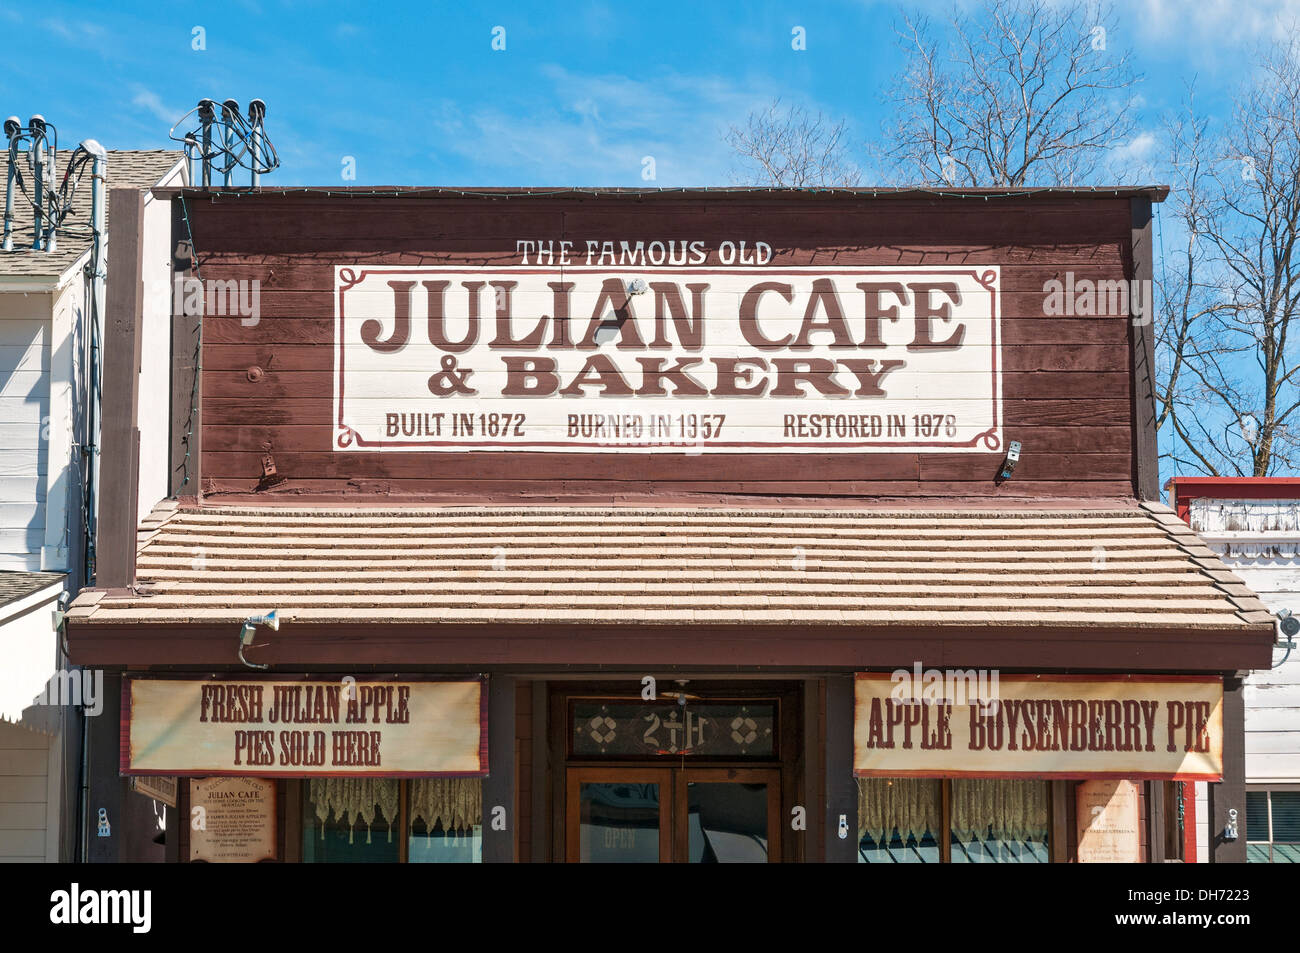 Kalifornien, Julian, historischen Goldrausch Stadt stammt aus dem Jahr 1870, Main Street, Julian Cafe & Bakery, bekannt für Apfelkuchen Stockfoto